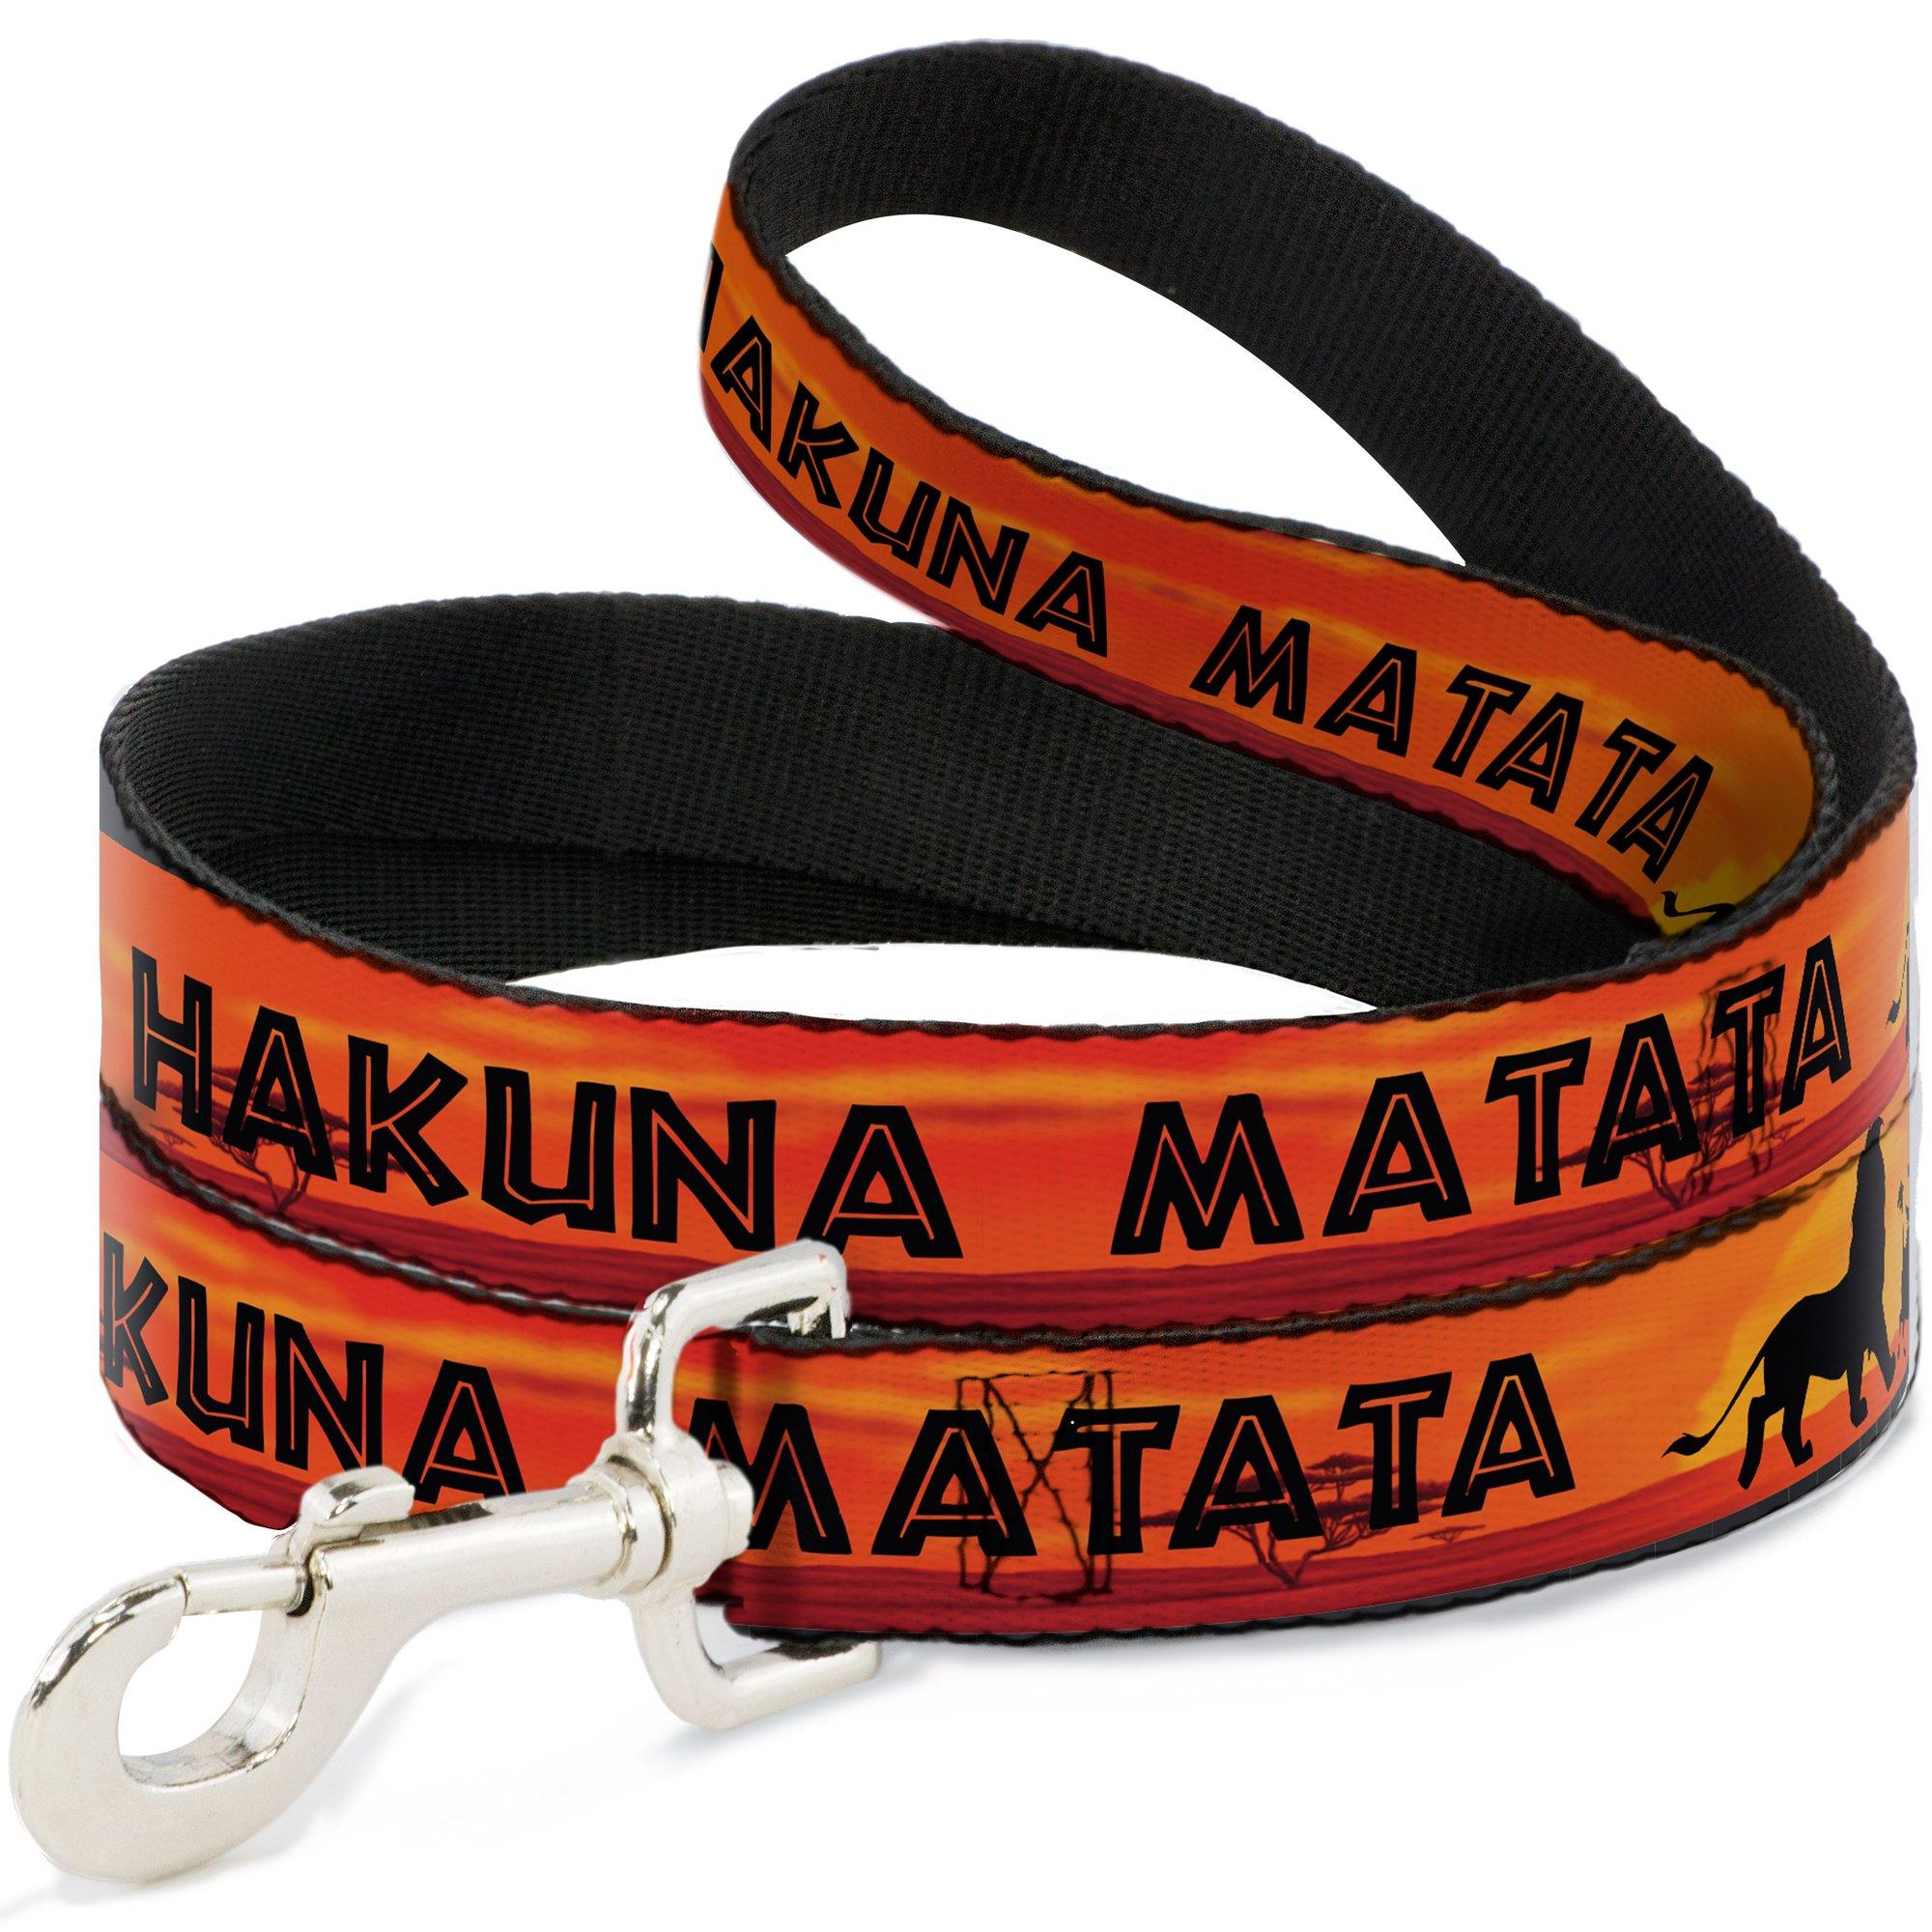 Hakuna Matata Dog Leash by Buckle-Down - Orange